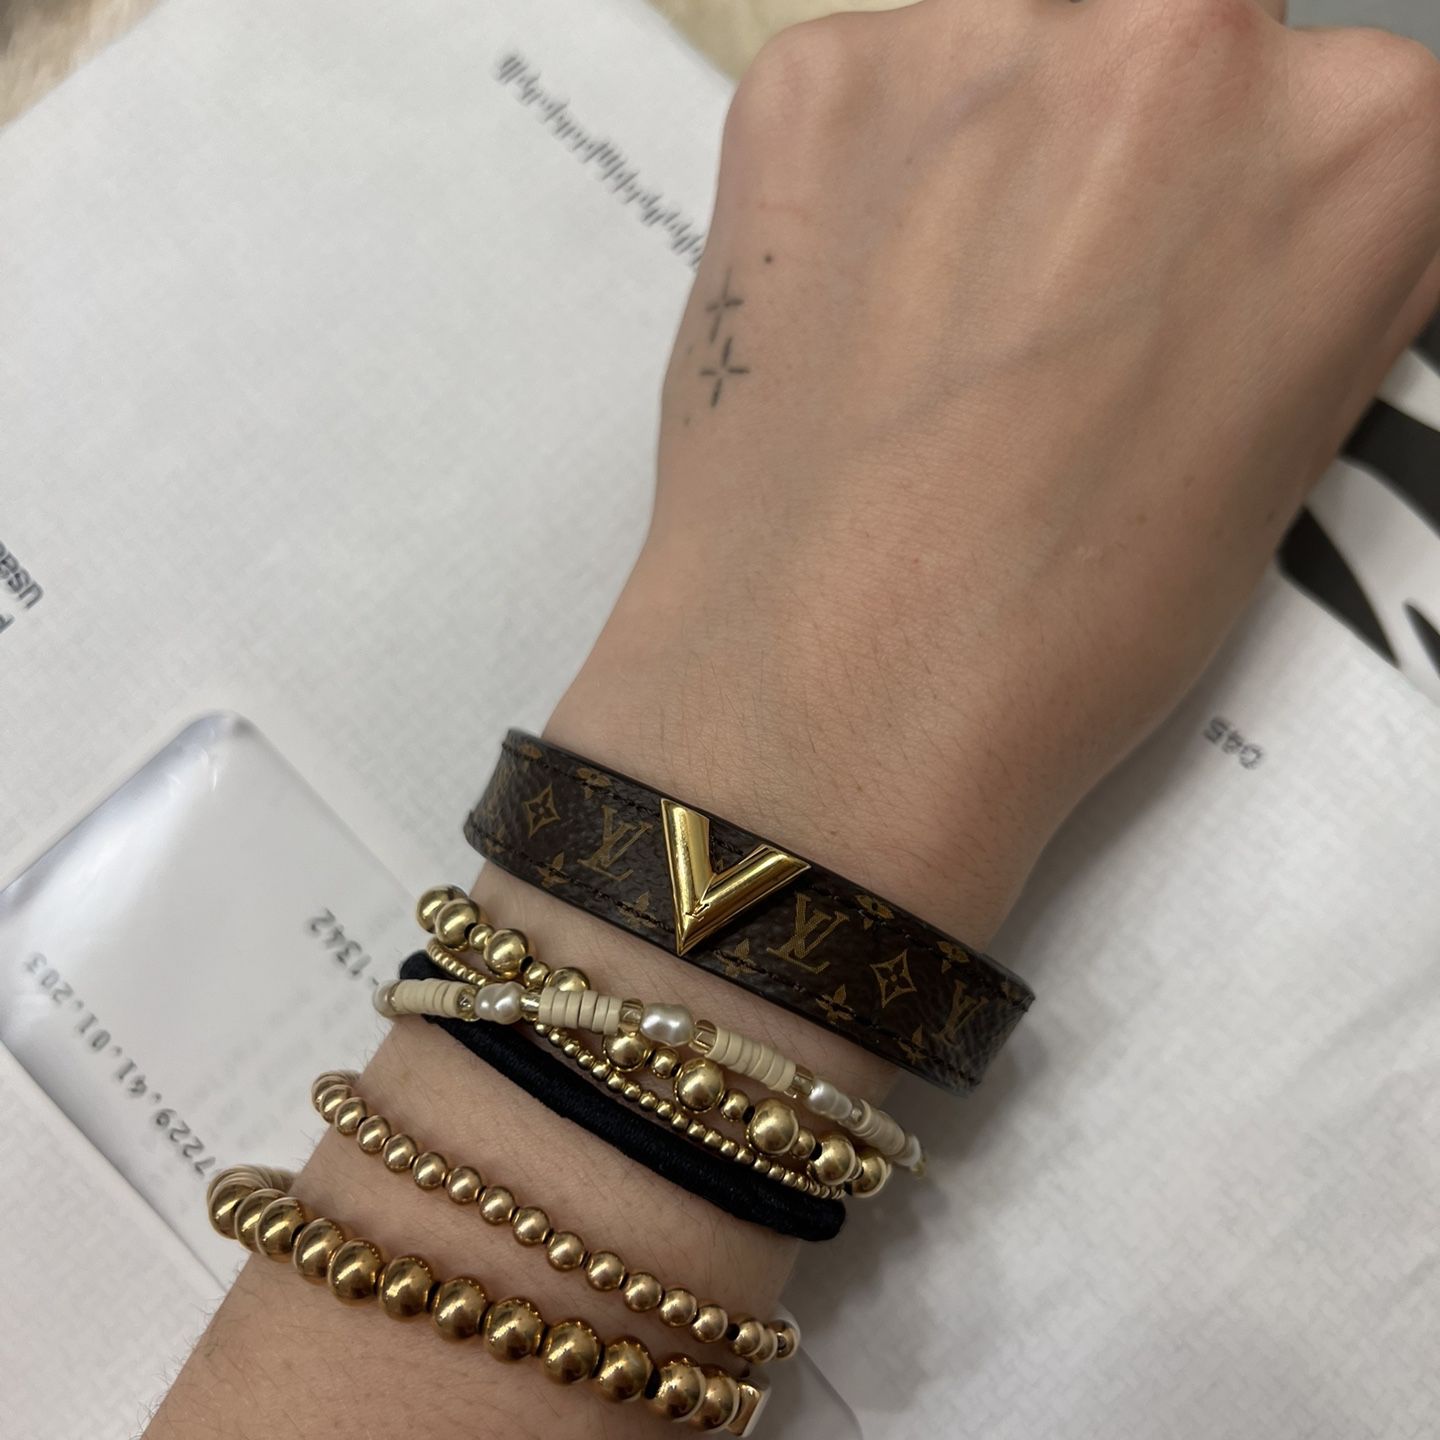 Louis Vuitton Essential V Bracelet Review